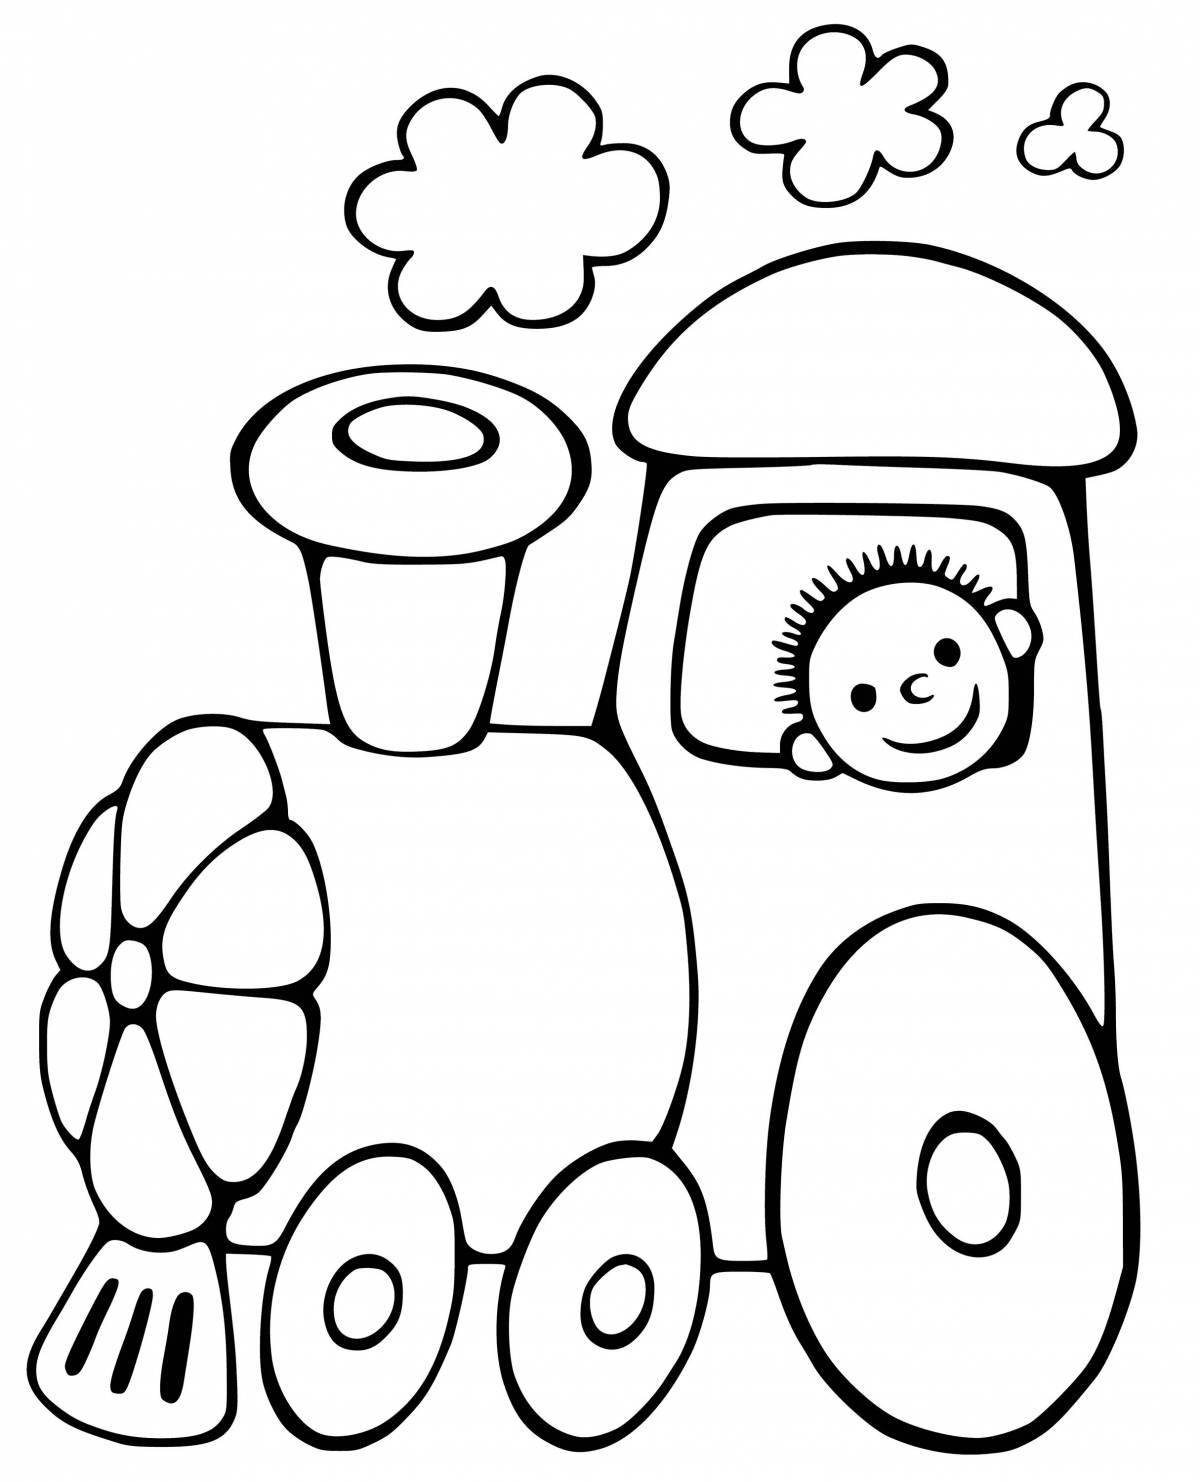 Creative children's train coloring book